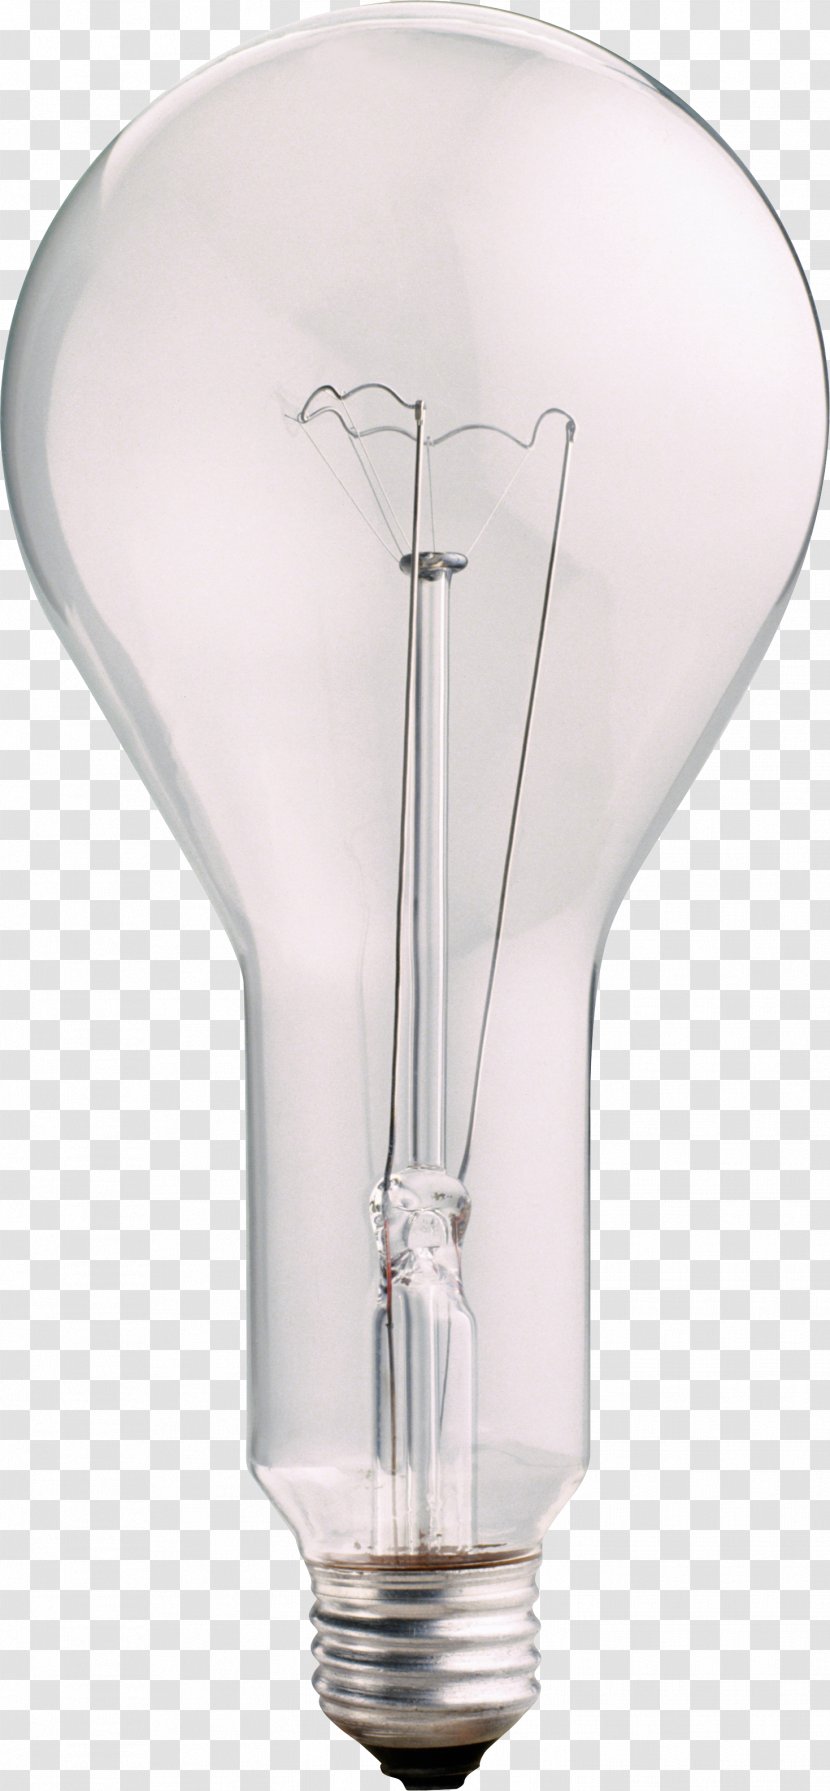 Incandescent Light Bulb Lamp Lighting - Image Transparent PNG